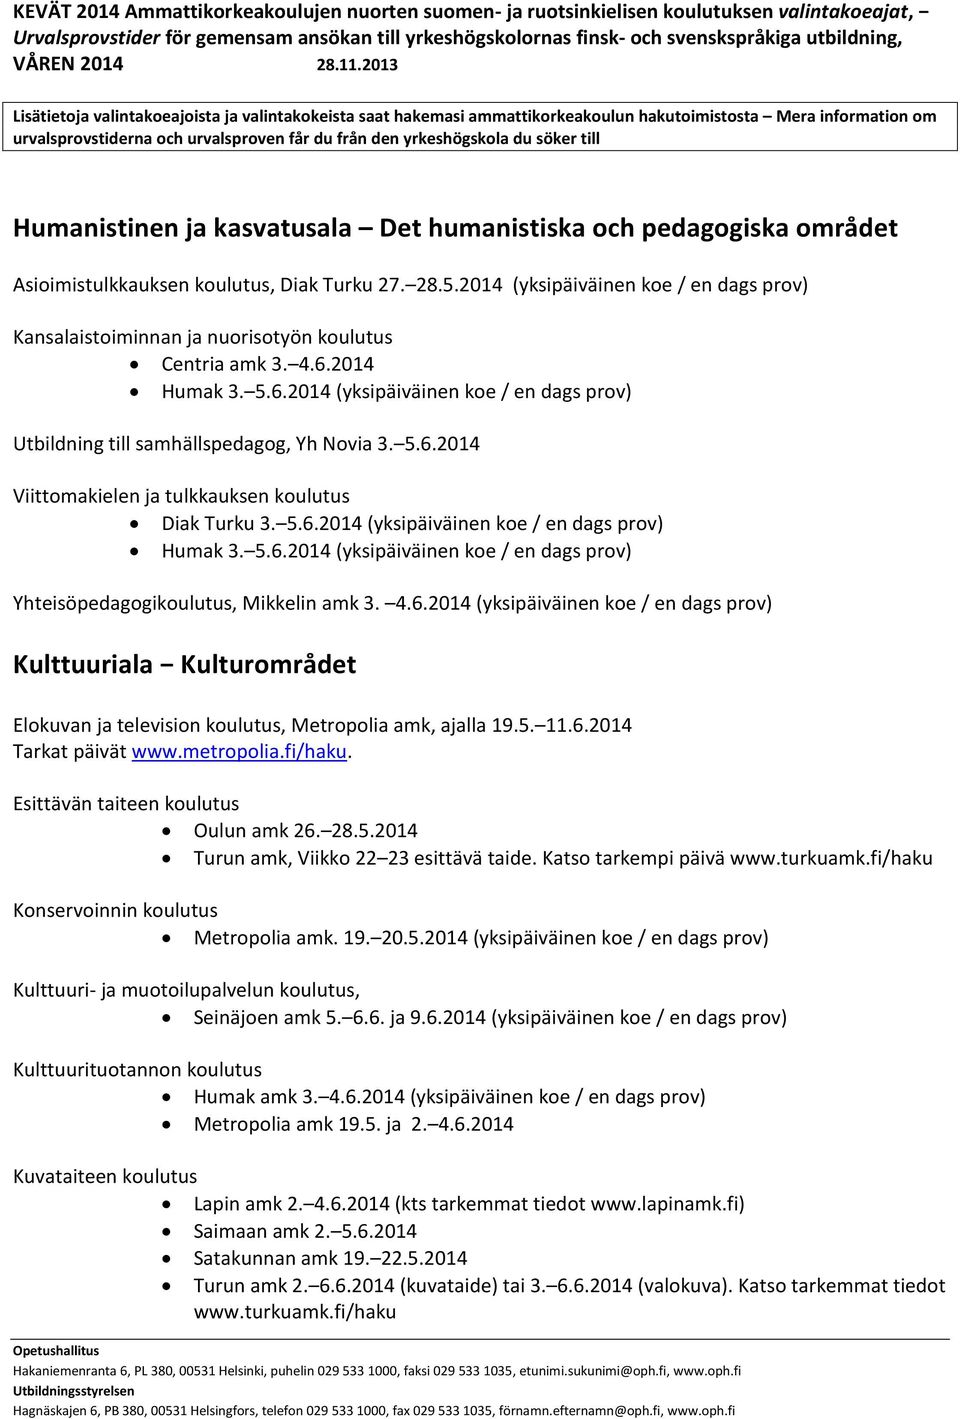 5.6.2014 Viittomakielen ja tulkkauksen koulutus Diak Turku 3. 5.6.2014 (yksipäiväinen koe / en dags prov) Humak 3. 5.6.2014 (yksipäiväinen koe / en dags prov) Yhteisöpedagogikoulutus, Mikkelin amk 3.